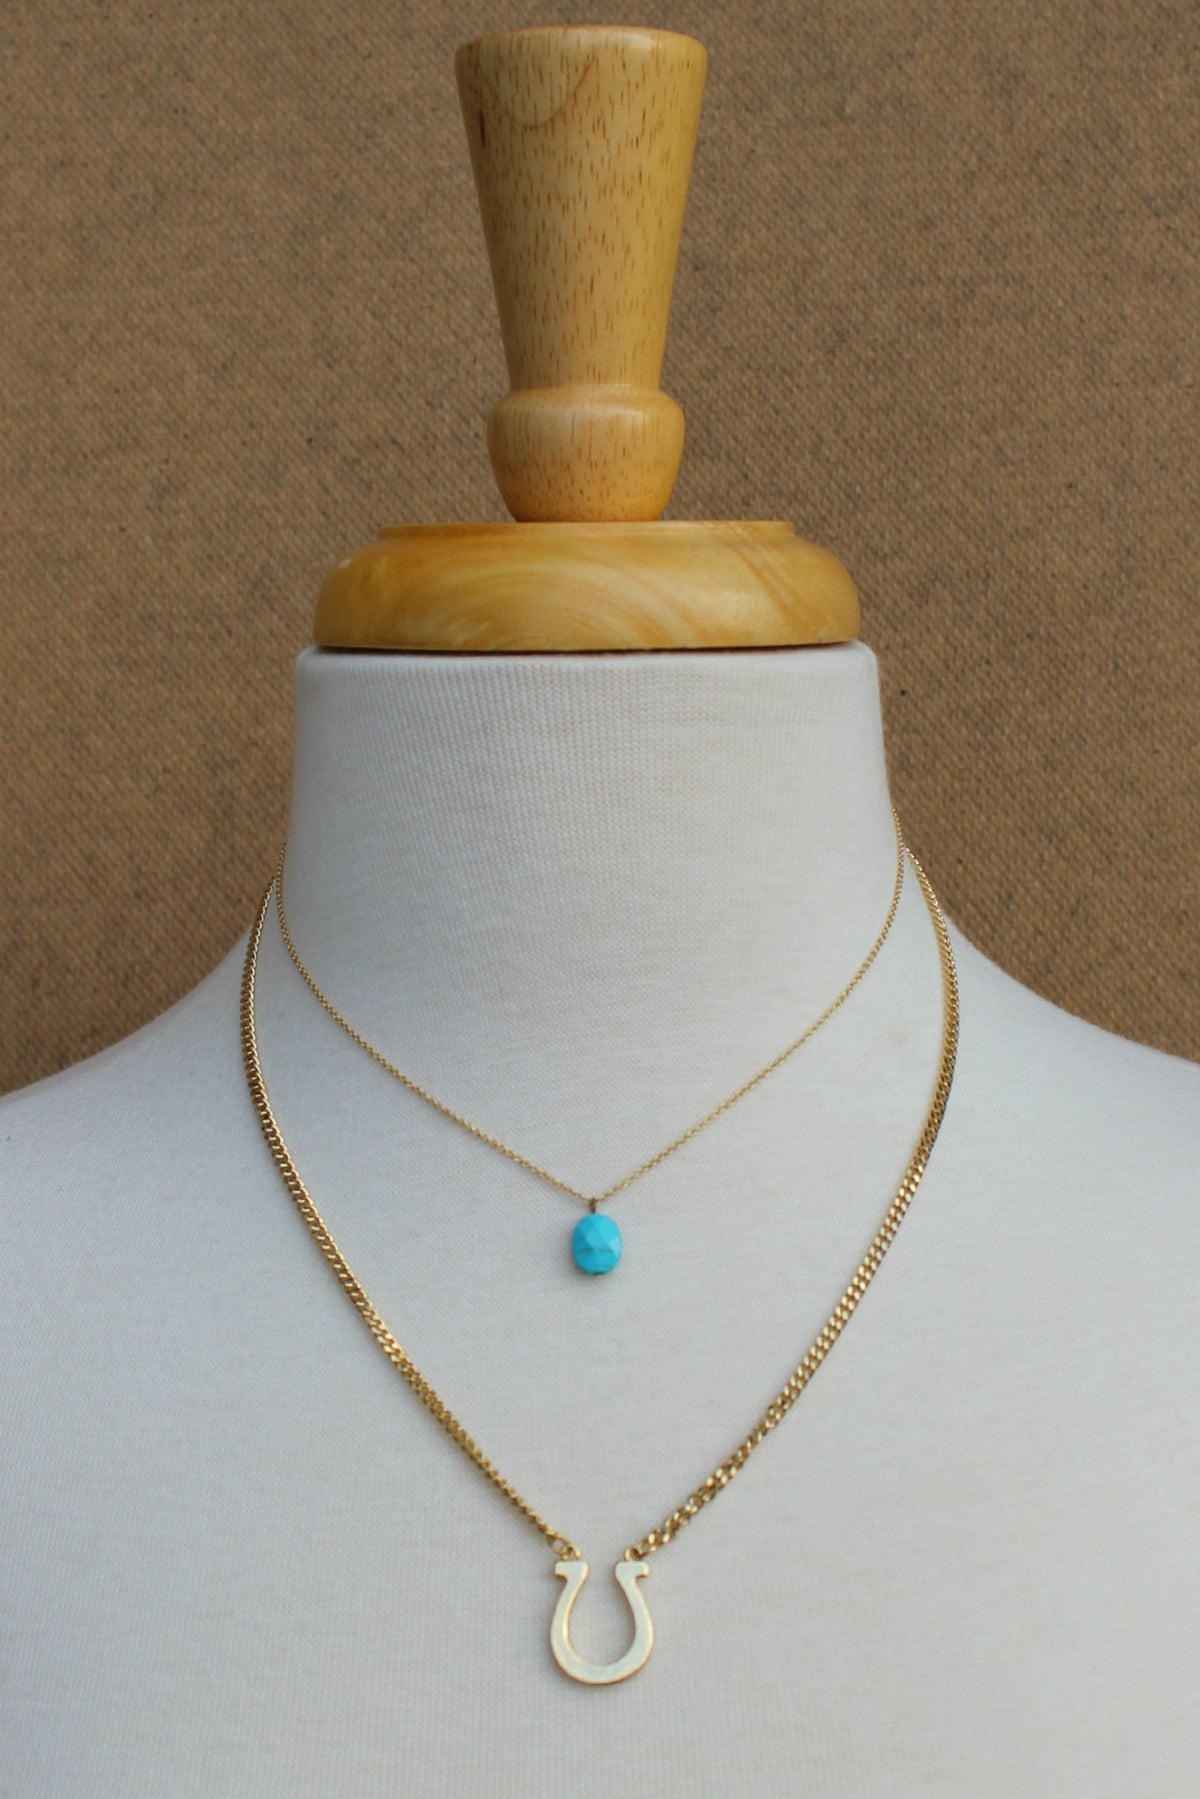 Horseshoe and Stone Necklace, Turquoise